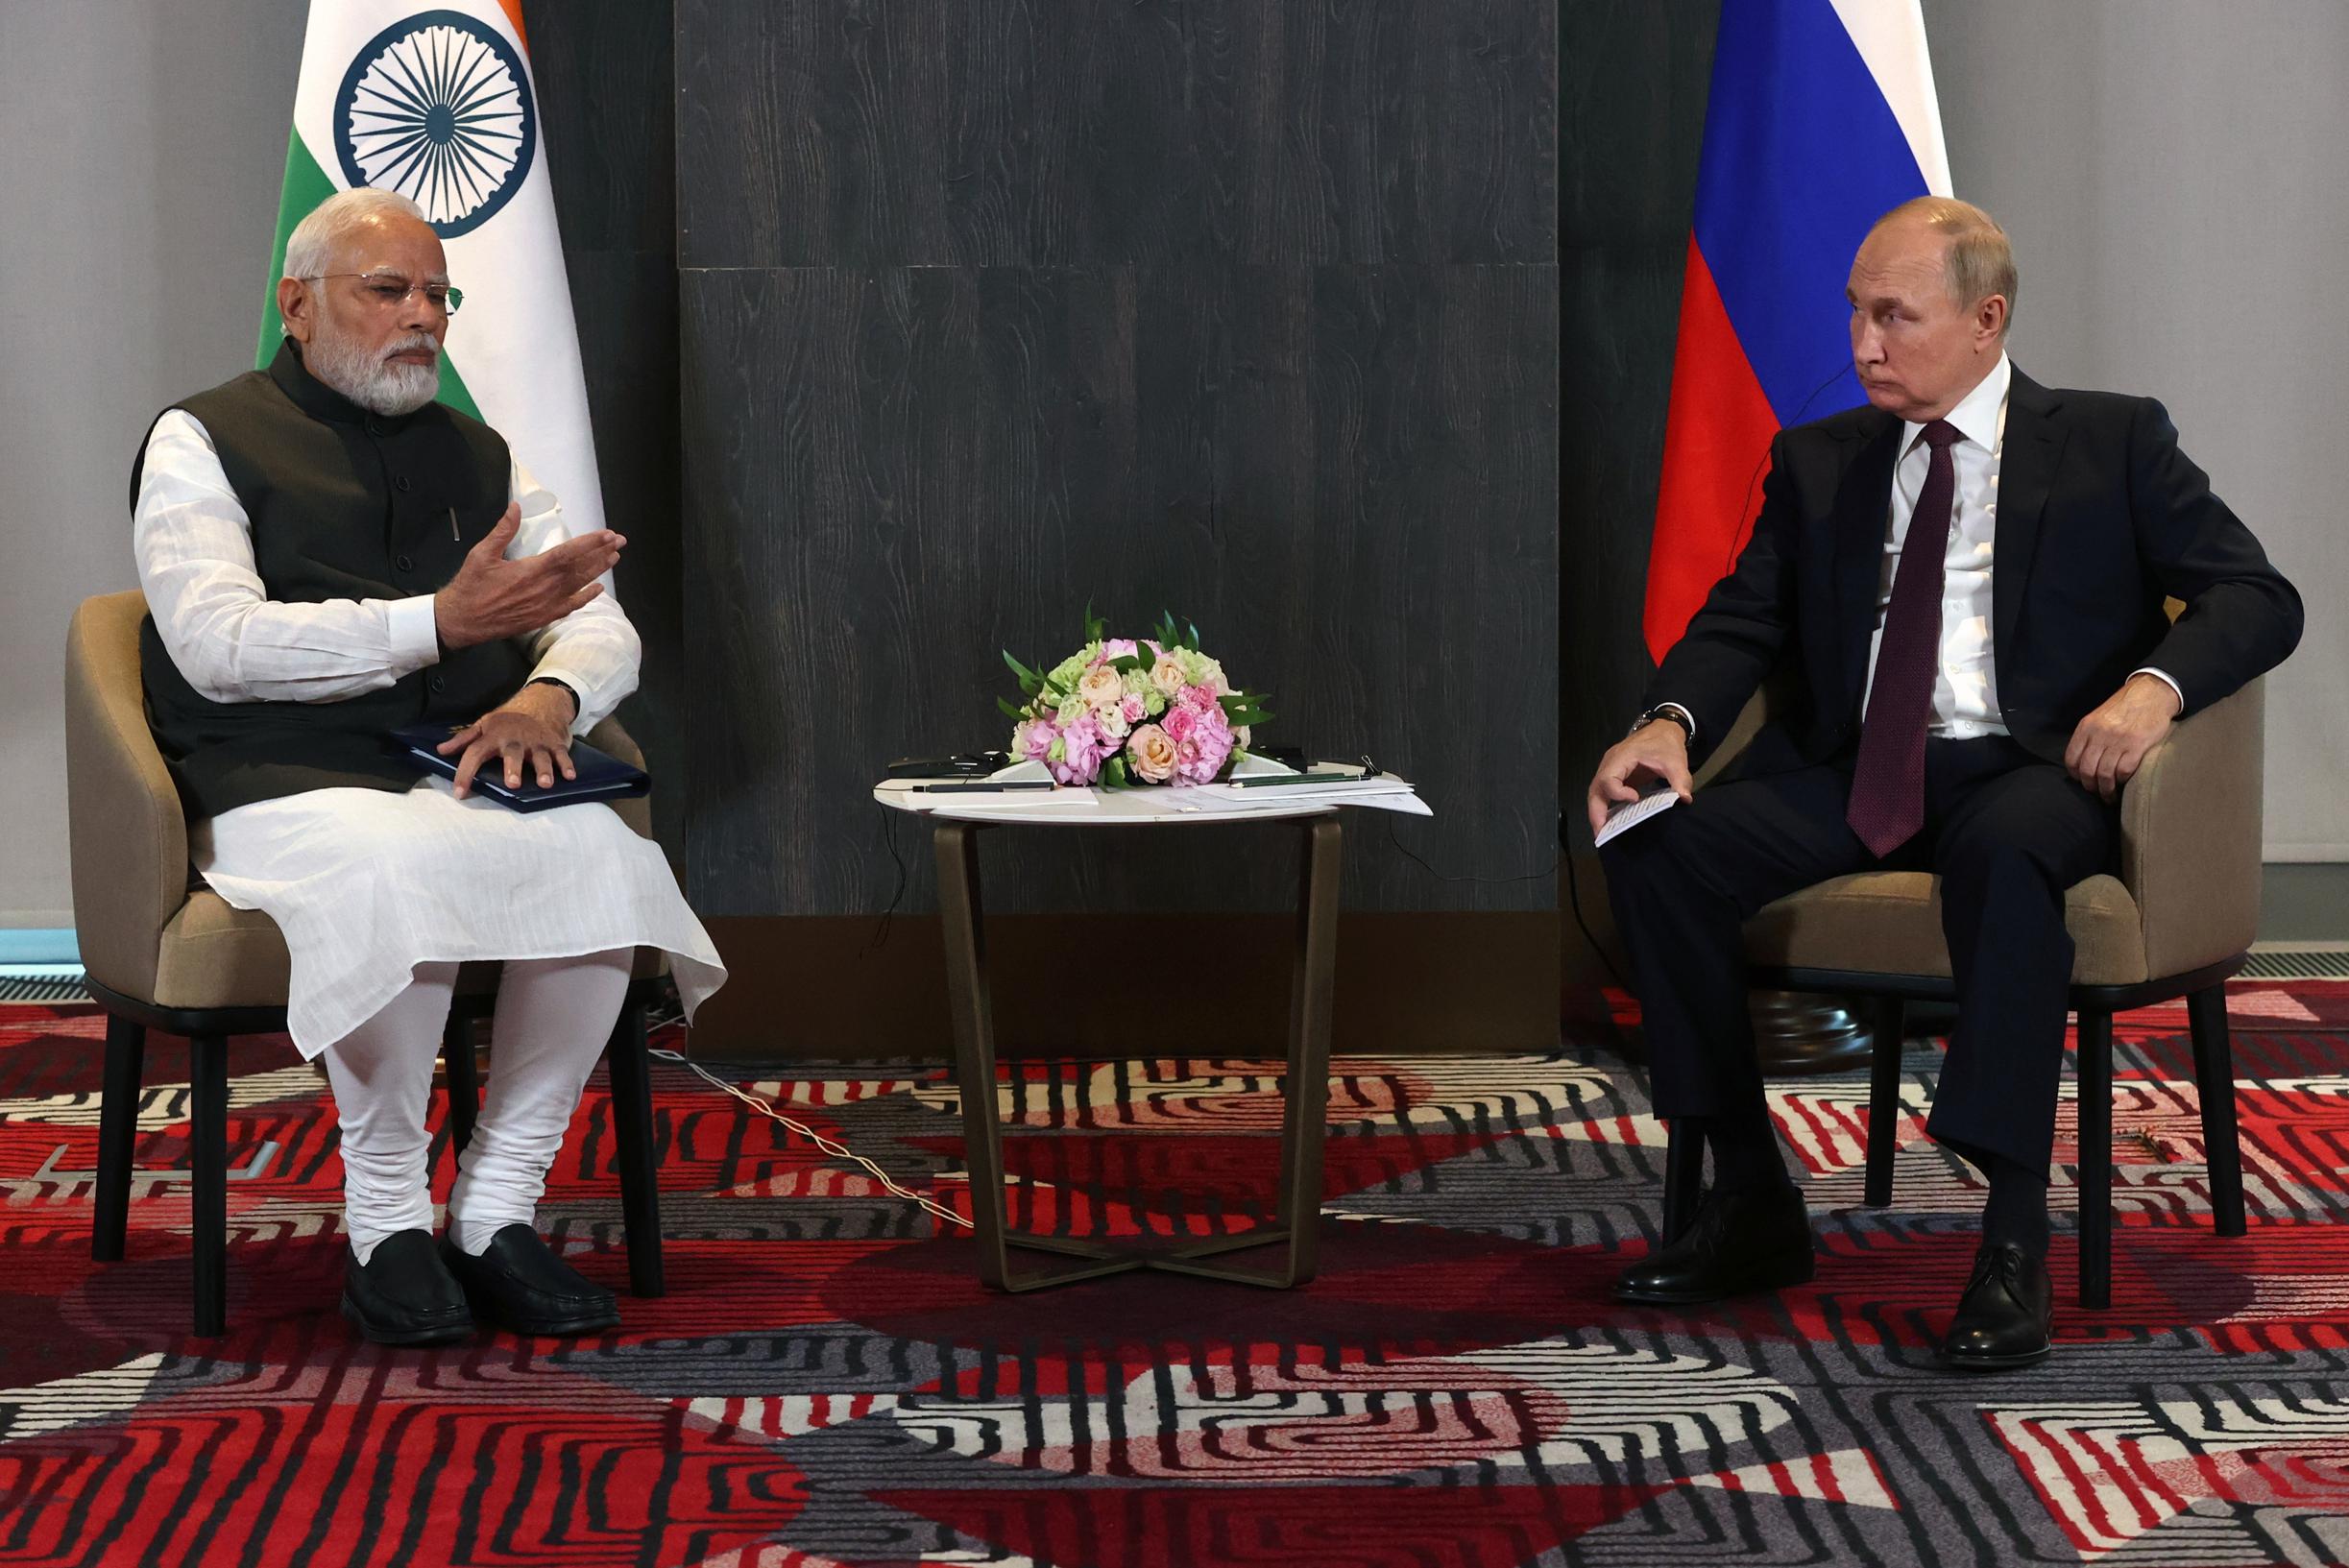 Dopo la Cina, l’India sta ora cliccando sulle dita di Putin sulla guerra in Ucraina